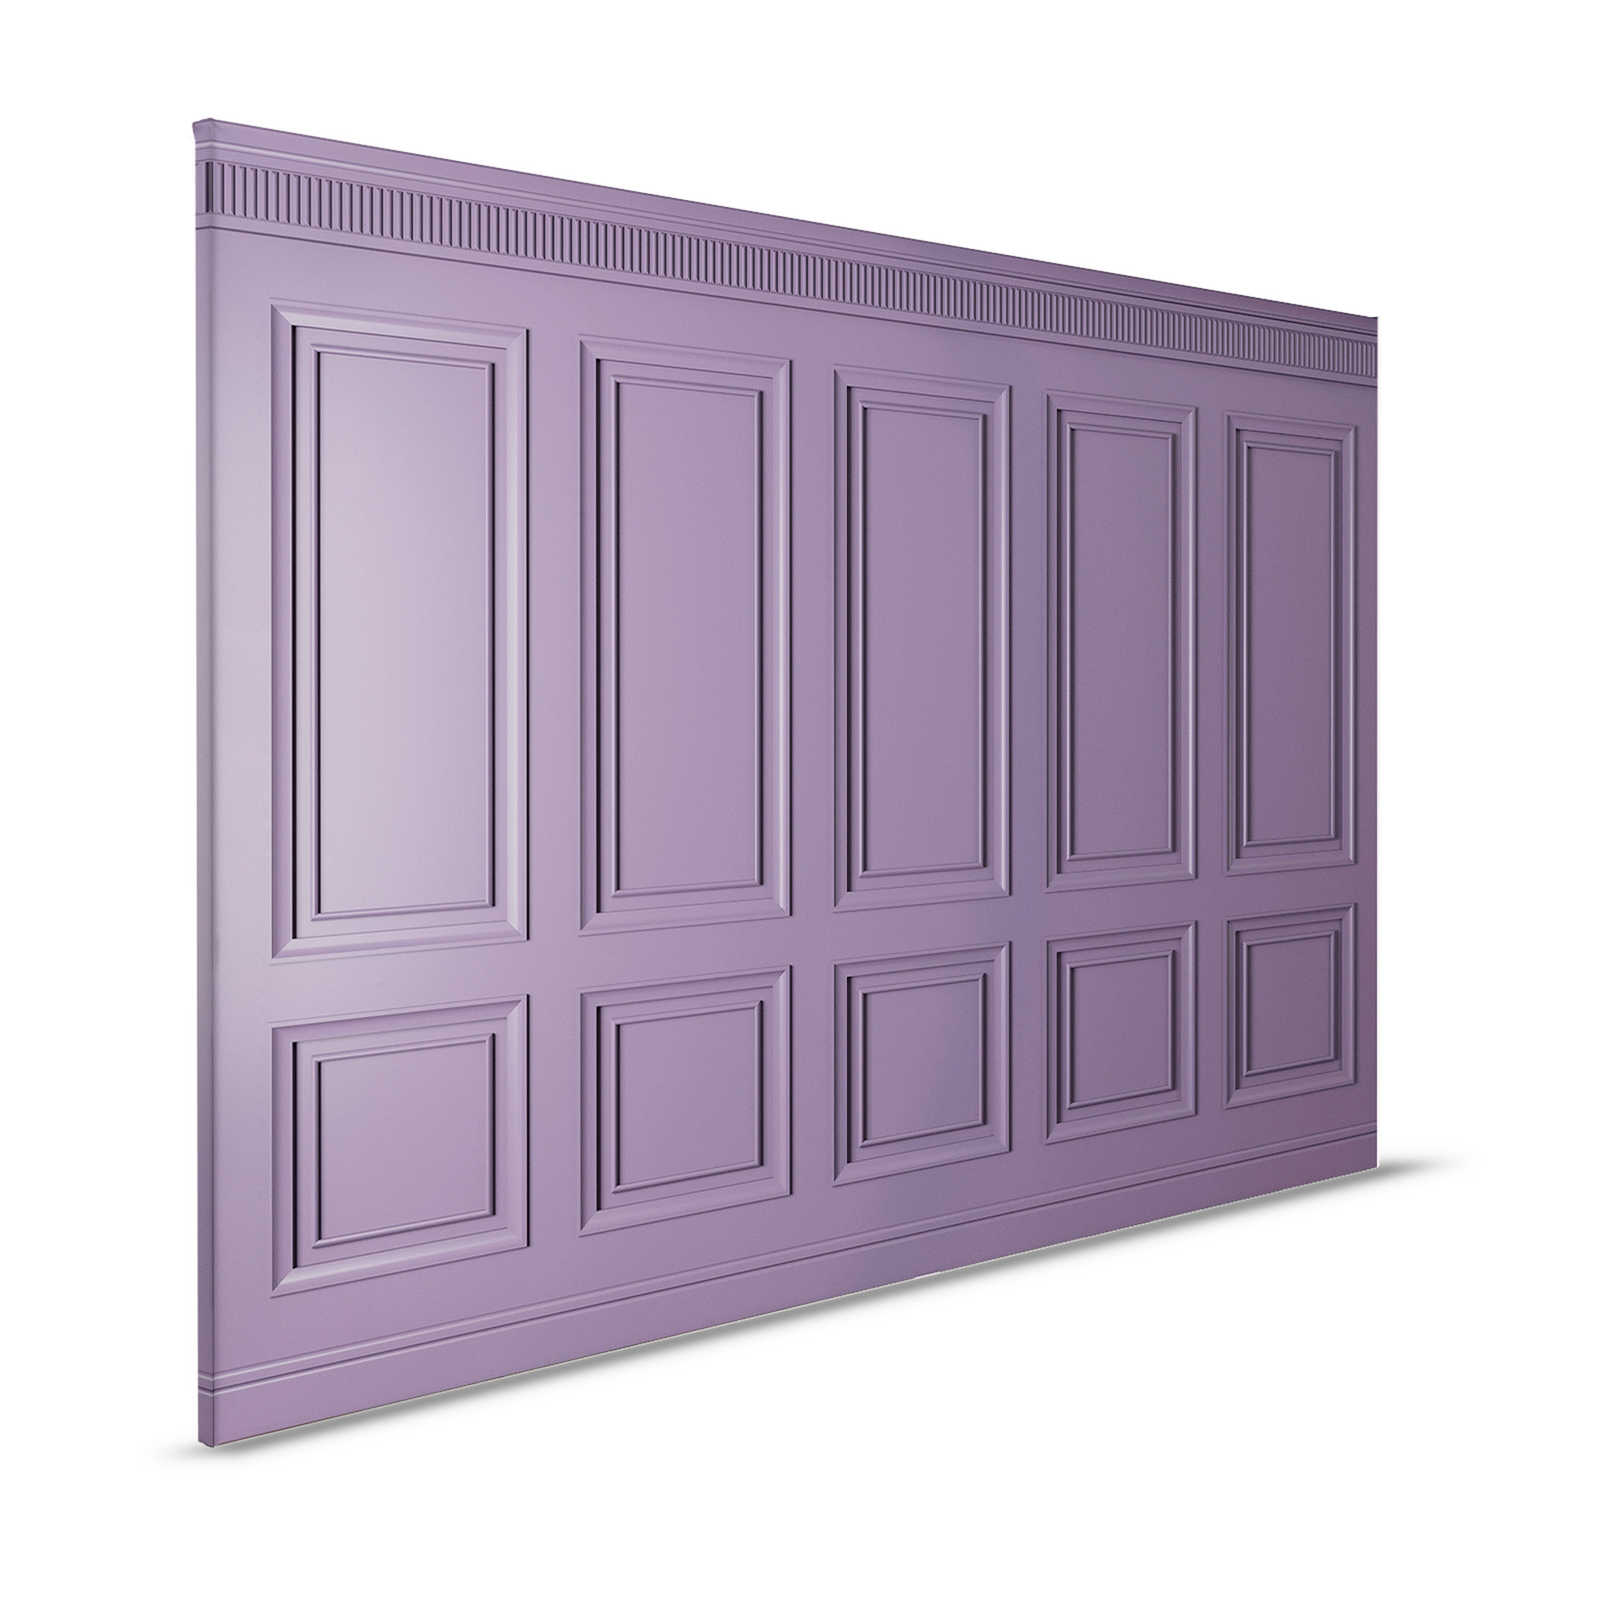 Kensington 3 - 3D Canvas painting wood paneling dark purple, violet - 1.20 m x 0.80 m
